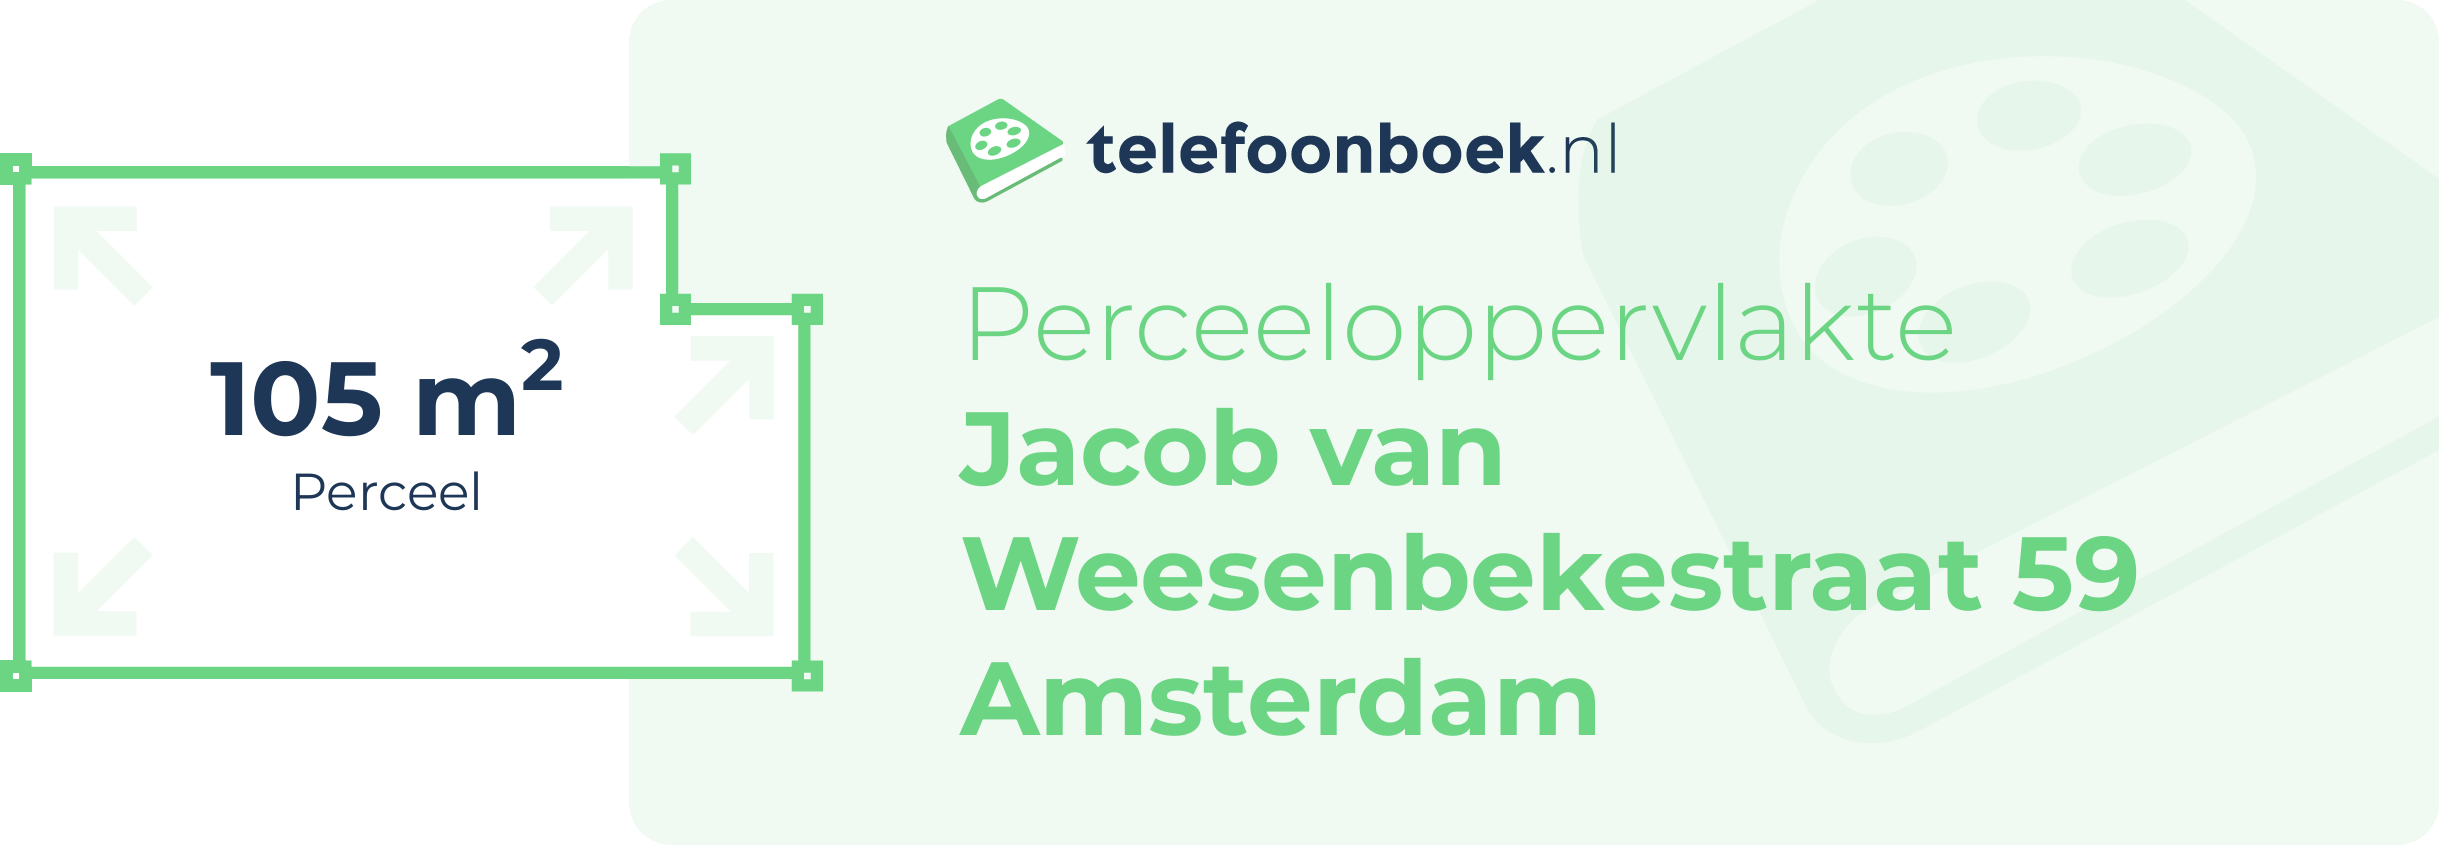 Perceeloppervlakte Jacob Van Weesenbekestraat 59 Amsterdam